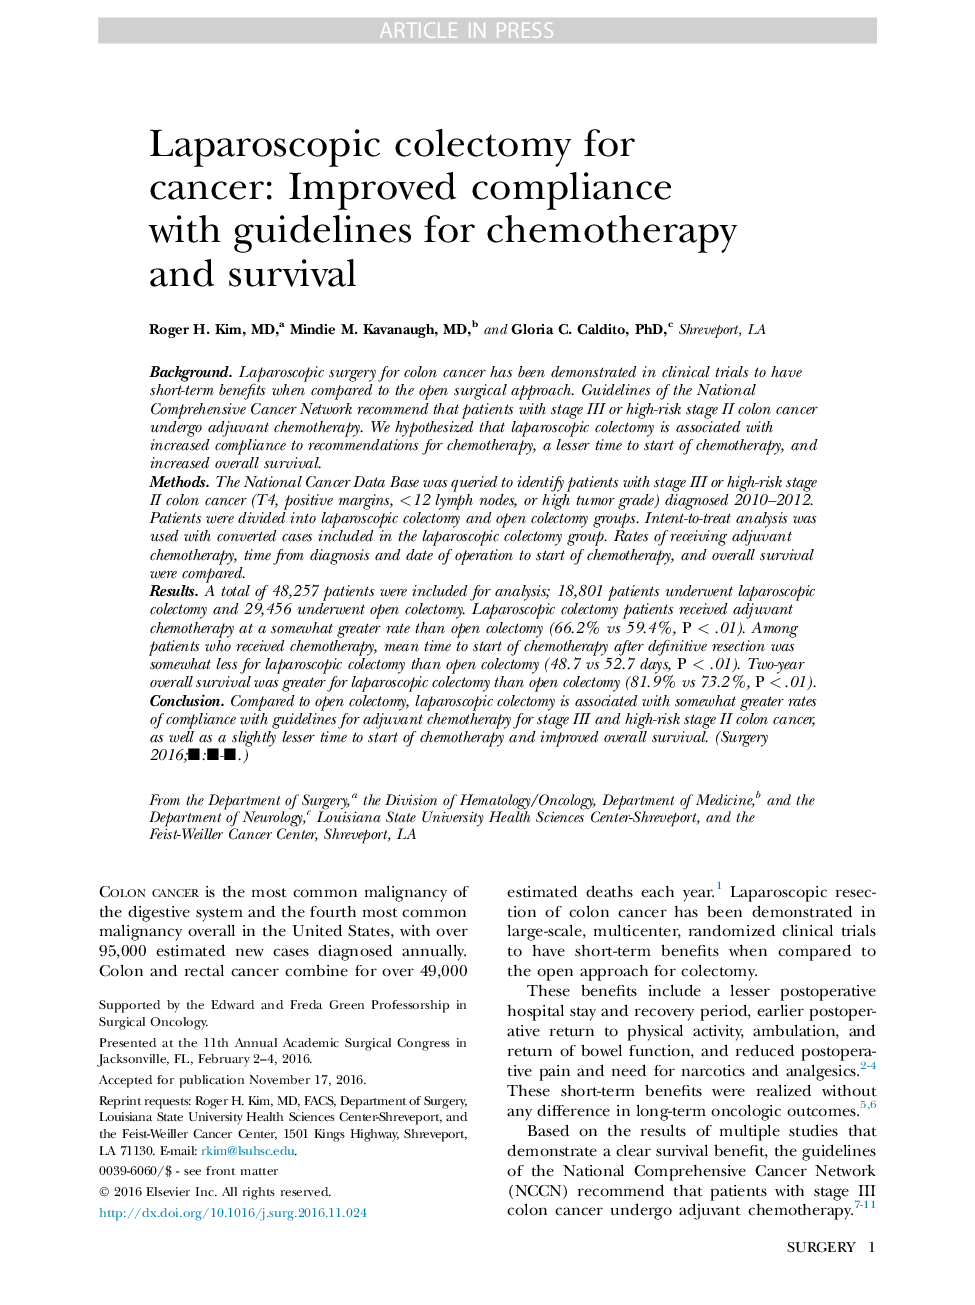 کمپلمان لاپاروسکوپی برای سرطان: مطابقت کامل با دستورالعمل های شیمی درمانی و بقا 